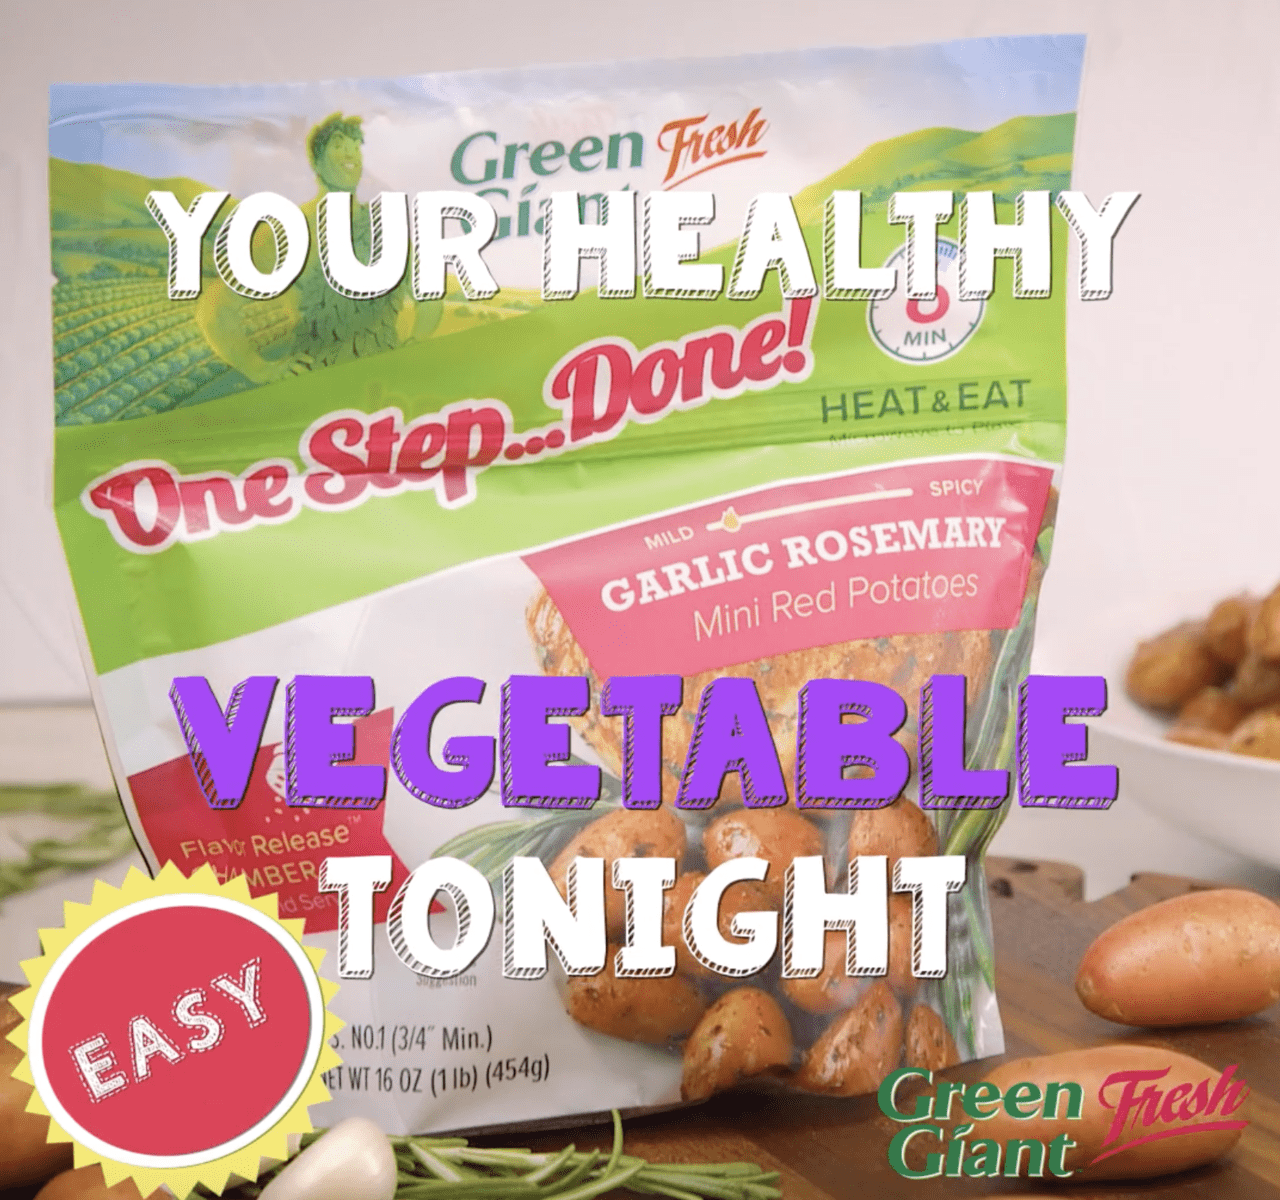 Green Giant™ Fresh: Healthy One Step...Done!™ Potatoes